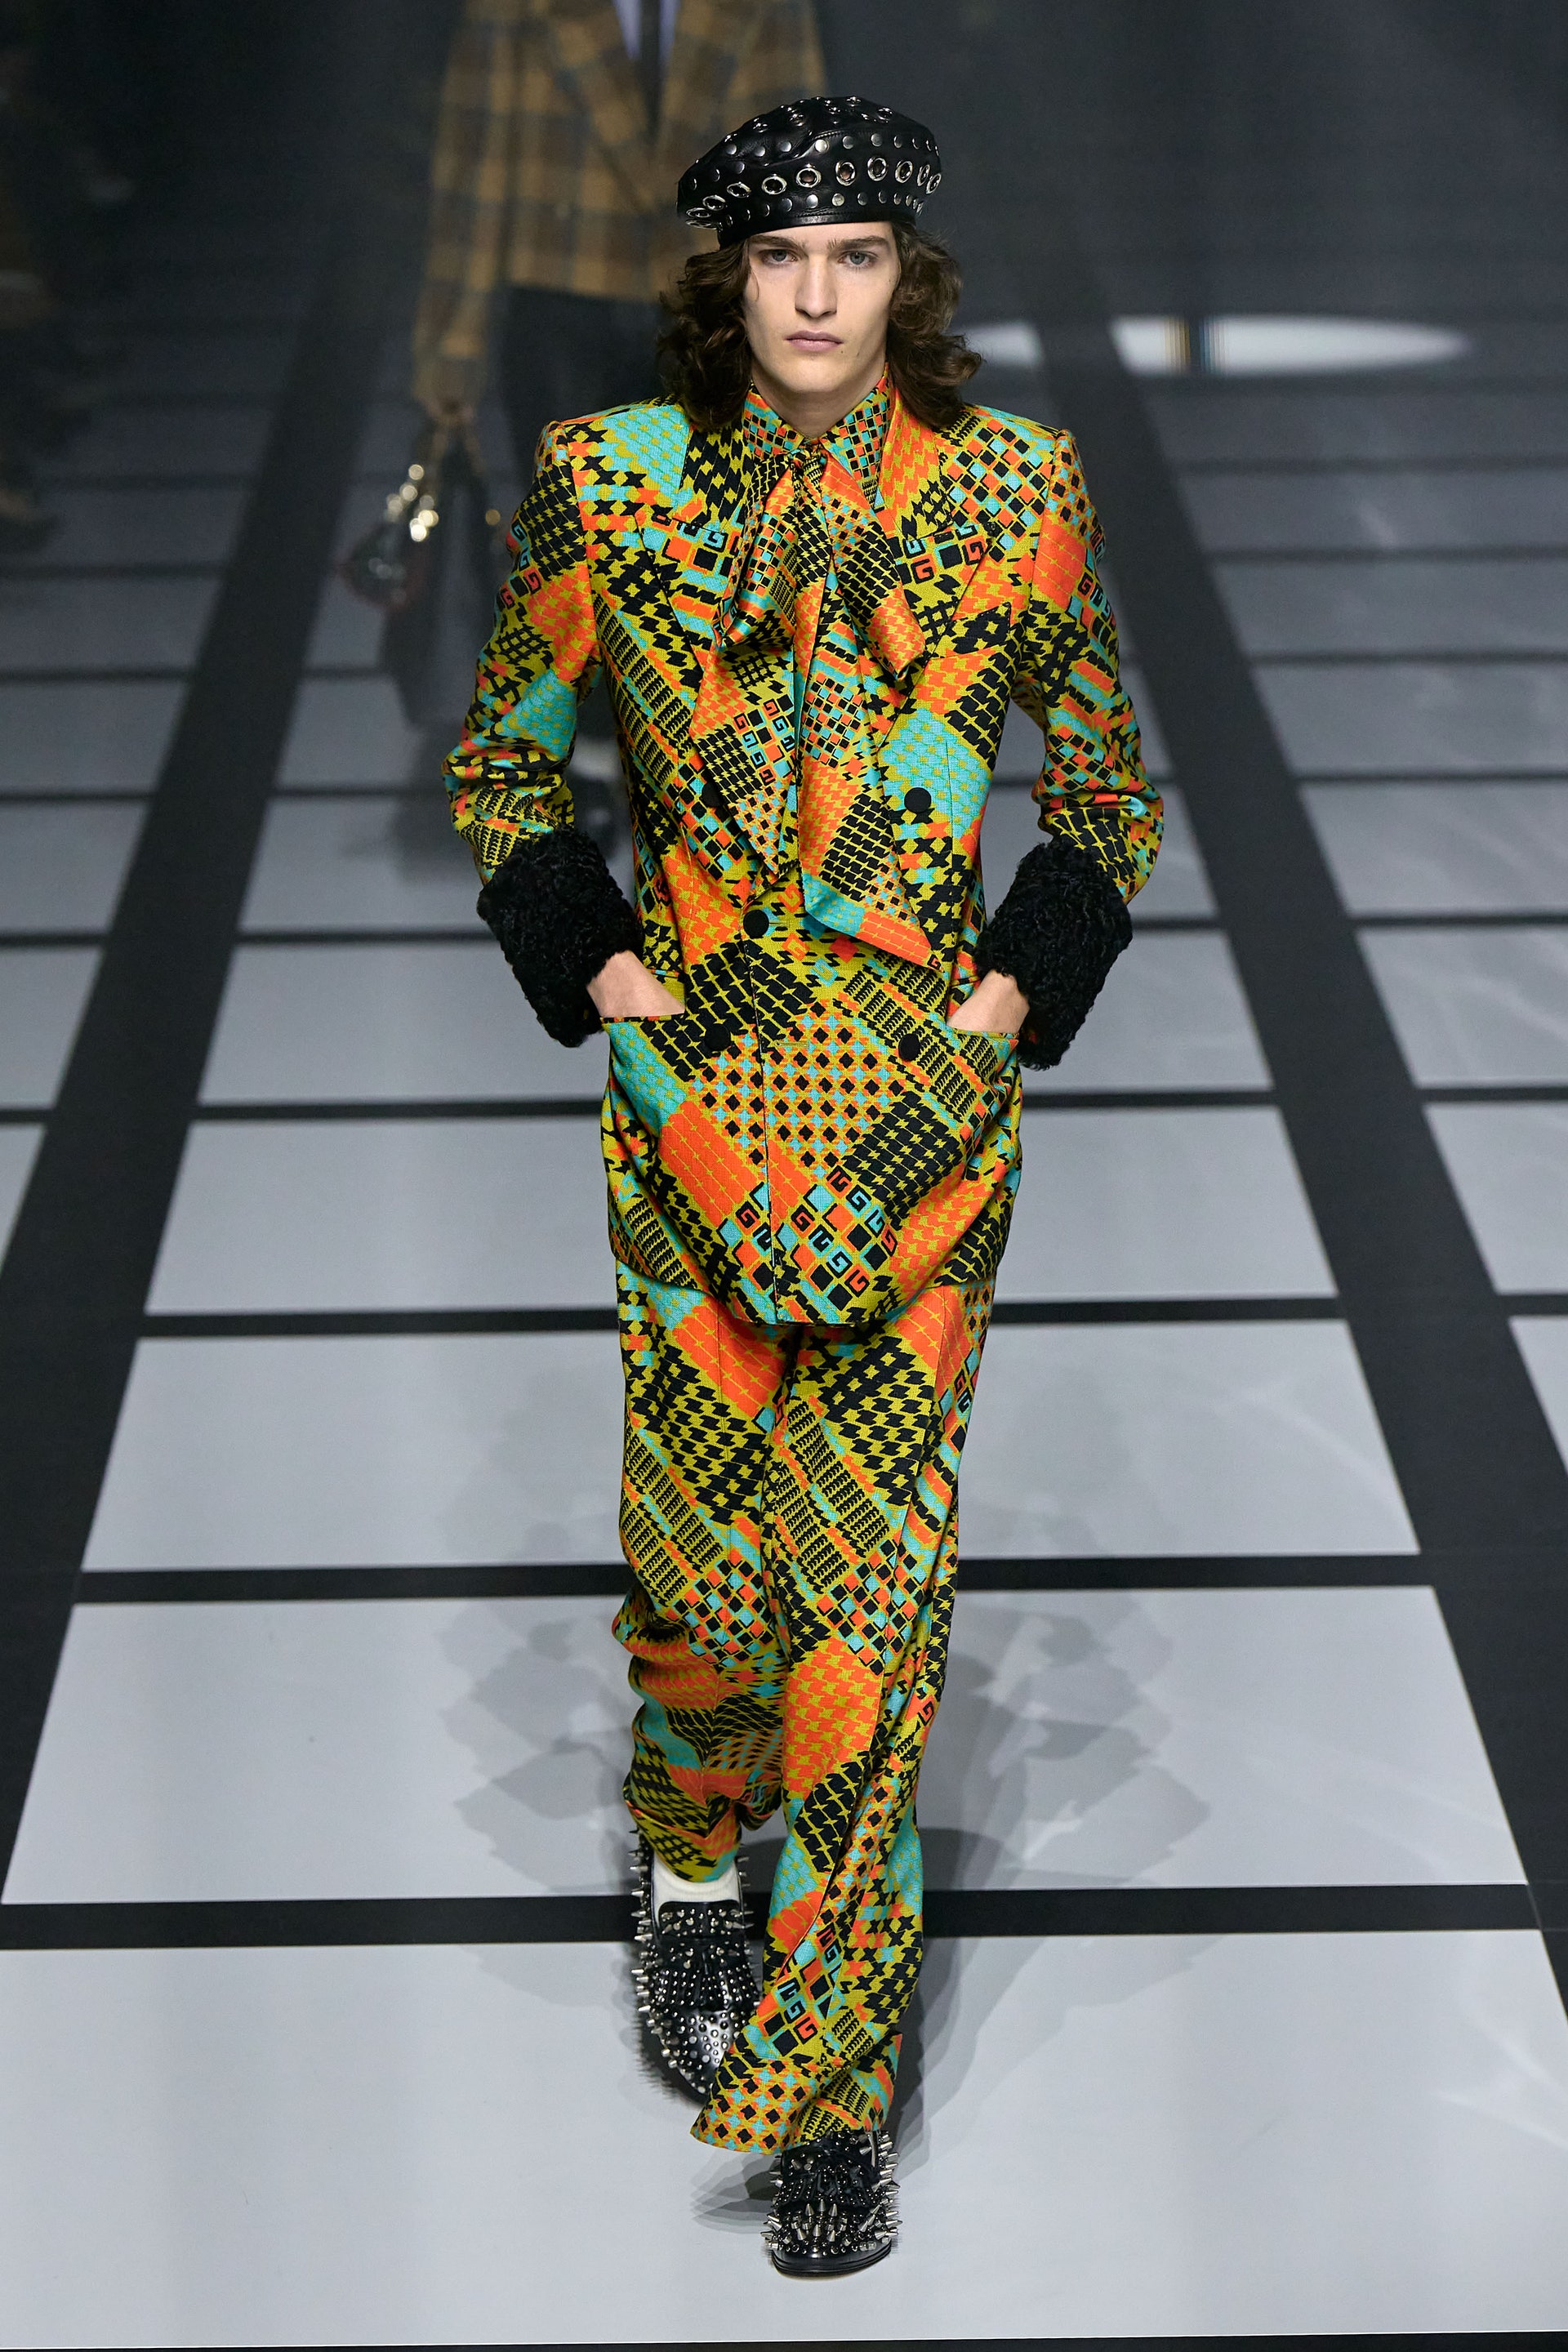 Giới mộ điệu rung chuyển với màn collab của Gucci x Adidas tại Milan Fashion Week 2022 - Ảnh 17